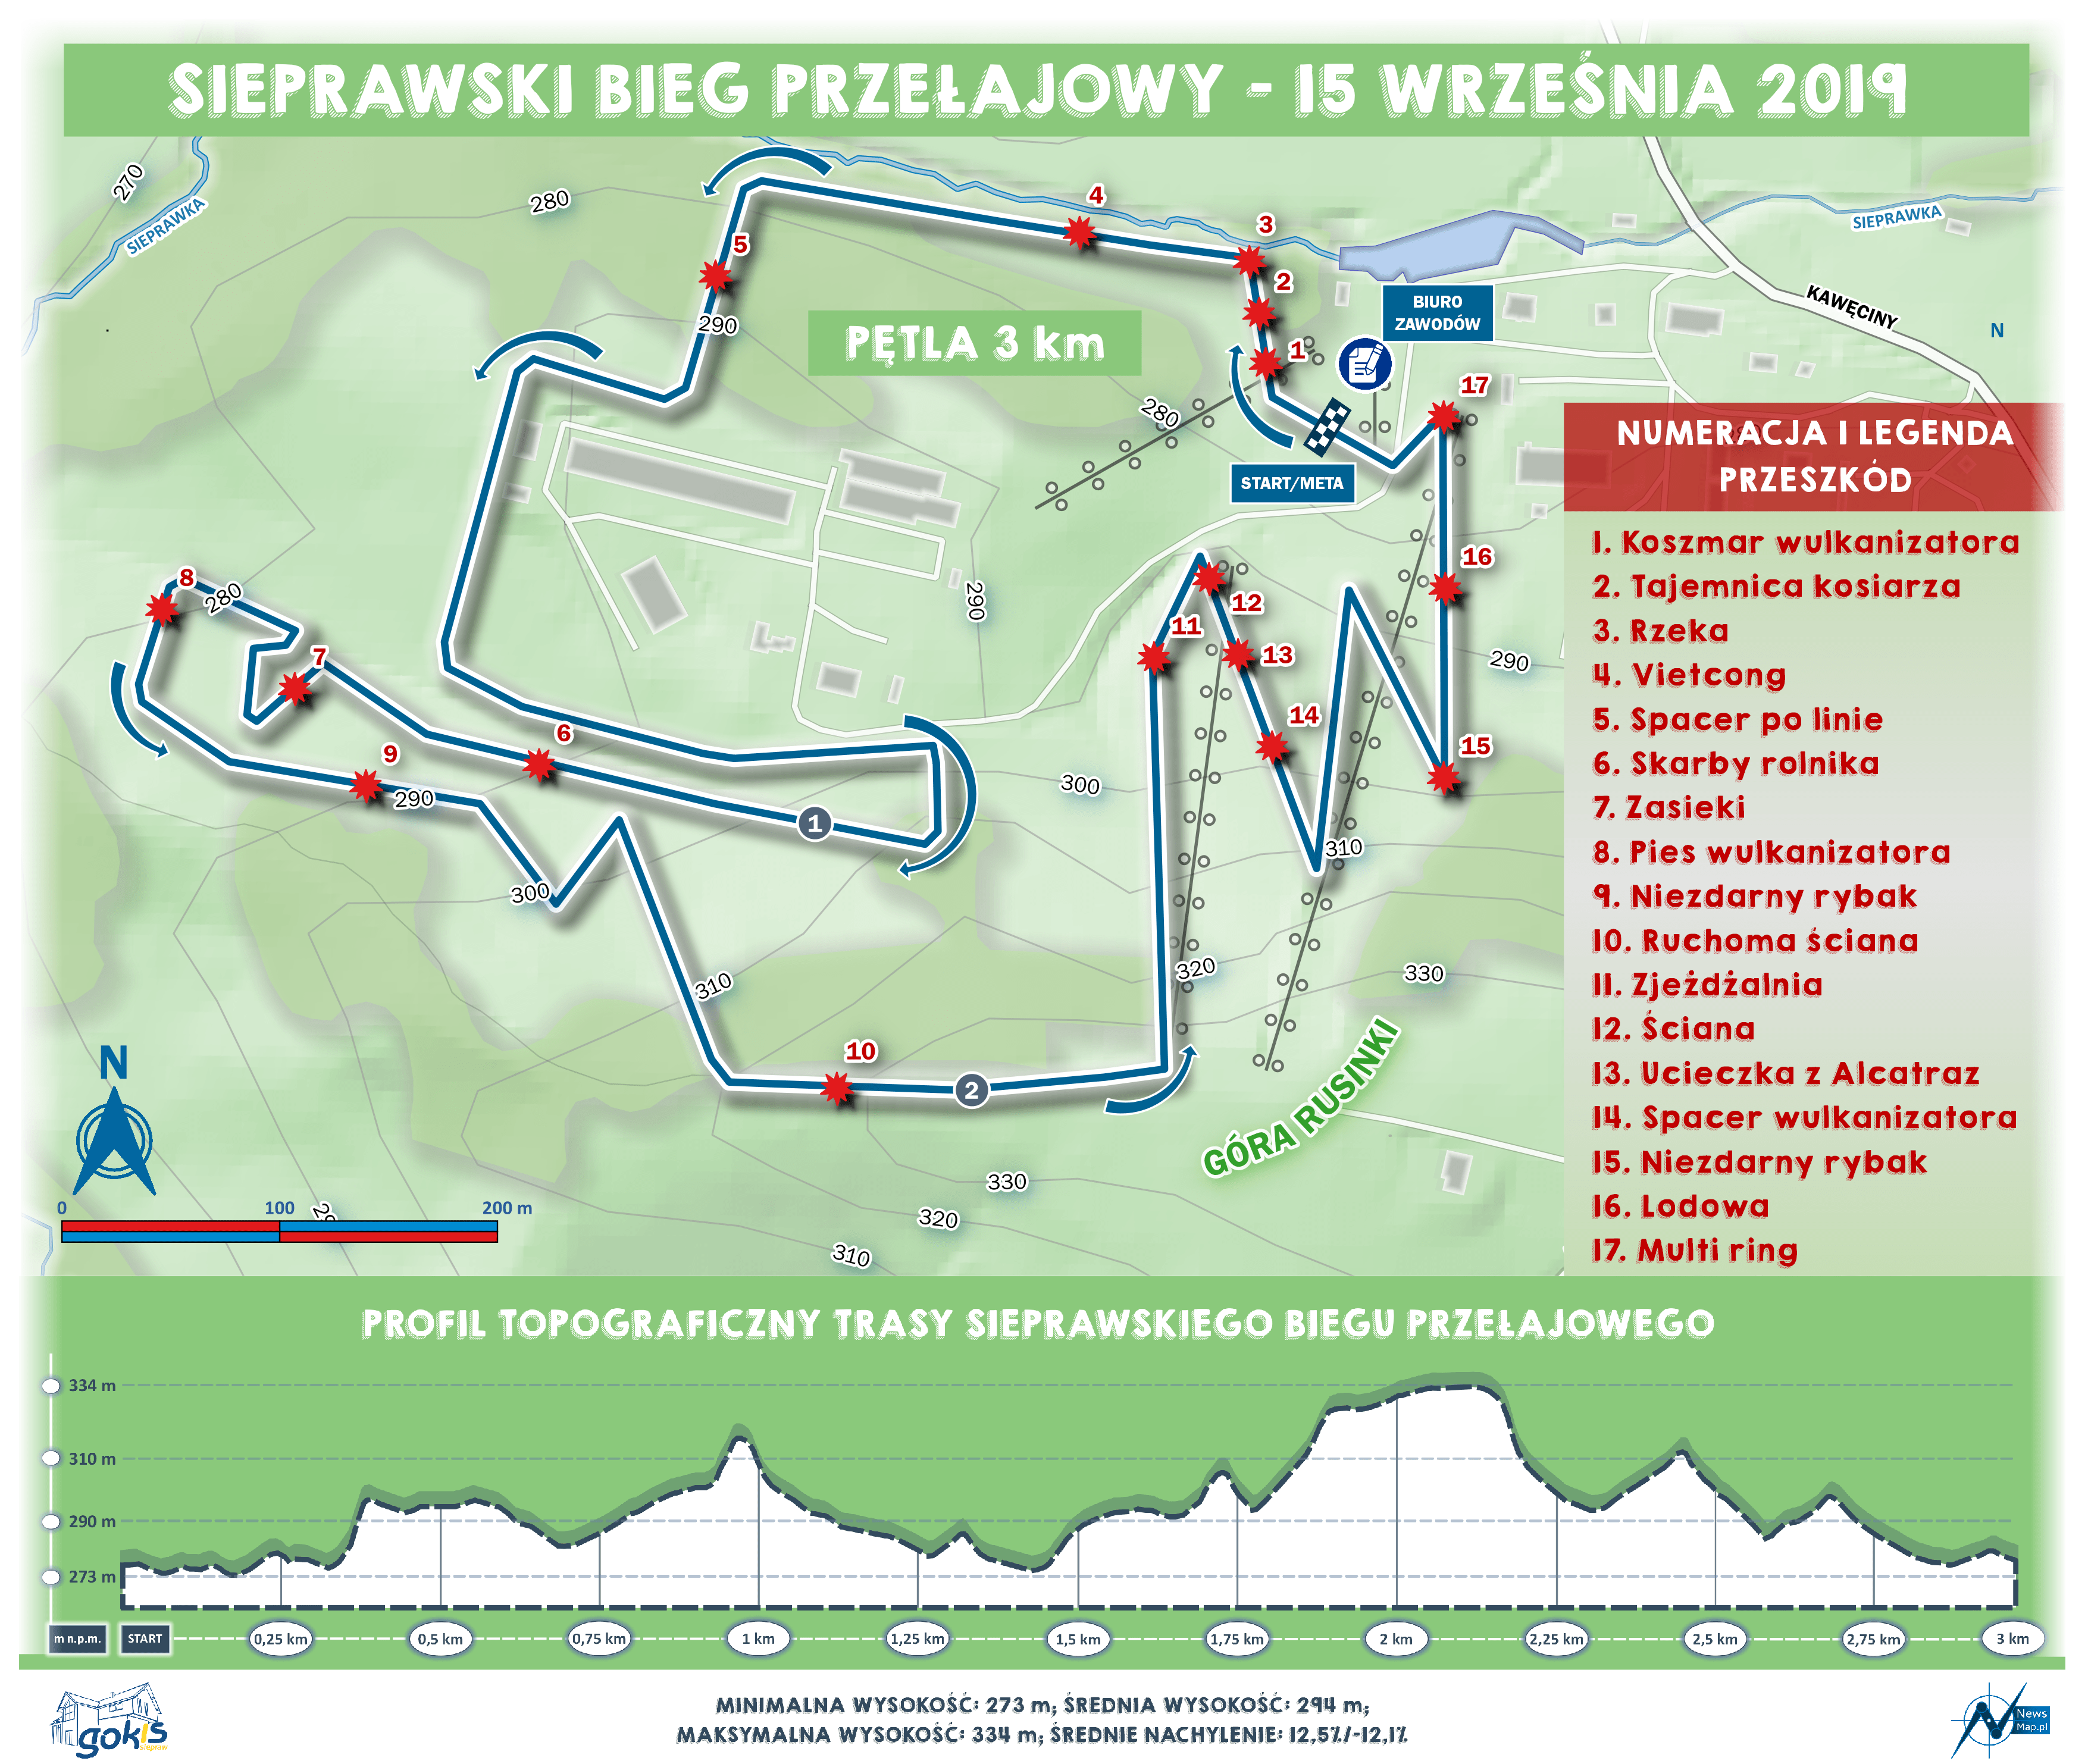 Sieprawski Bieg Przejałowy 2019 - mapa statyczna on-line